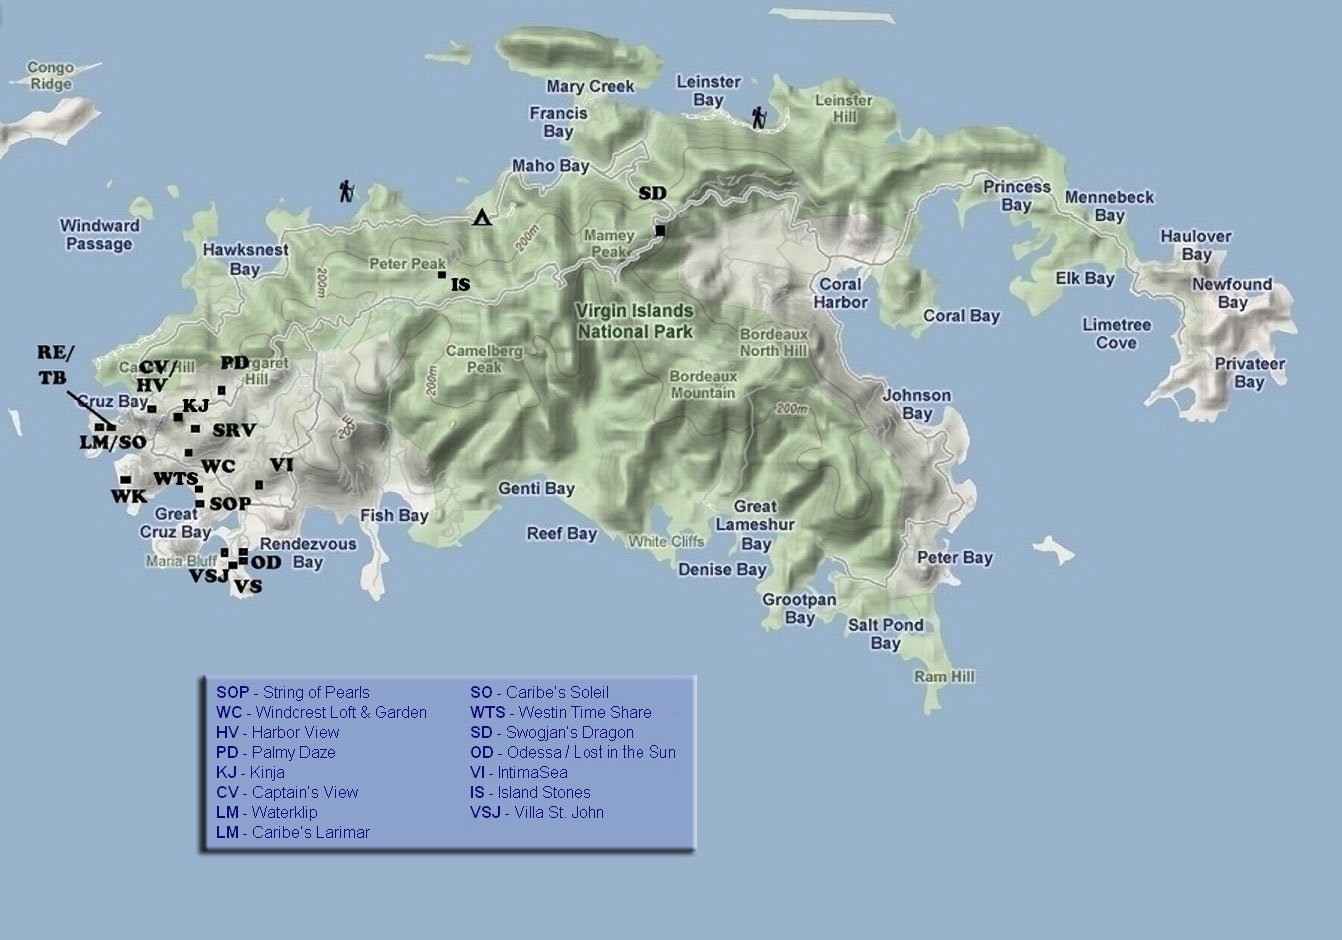 Villa Map